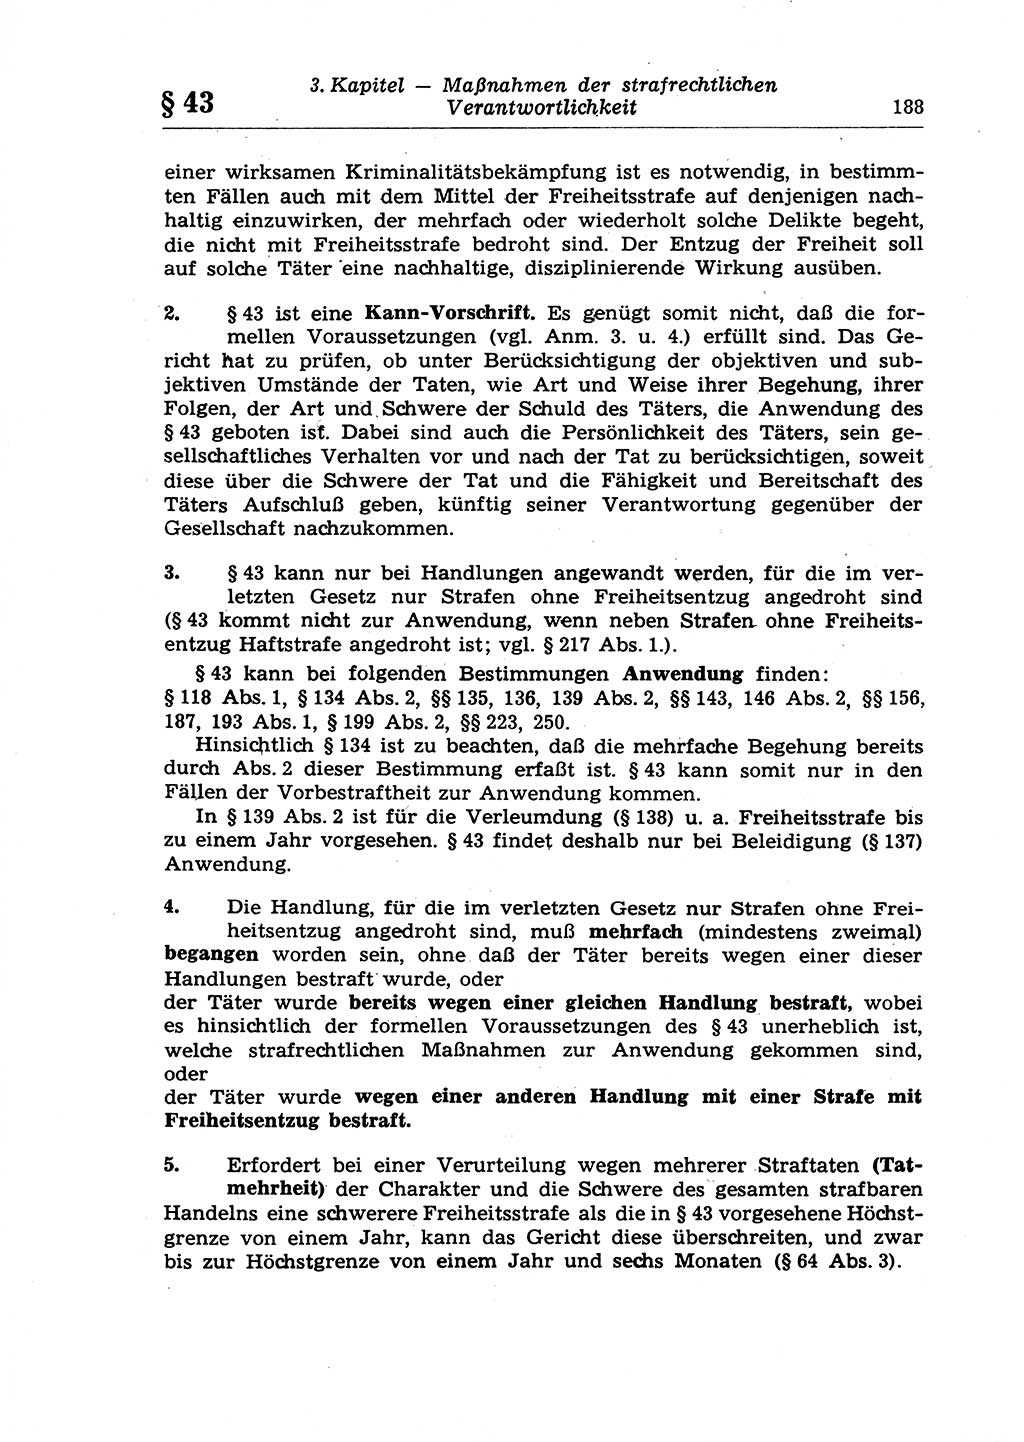 Strafrecht der Deutschen Demokratischen Republik (DDR), Lehrkommentar zum Strafgesetzbuch (StGB), Allgemeiner Teil 1970, Seite 188 (Strafr. DDR Lehrkomm. StGB AT 1970, S. 188)